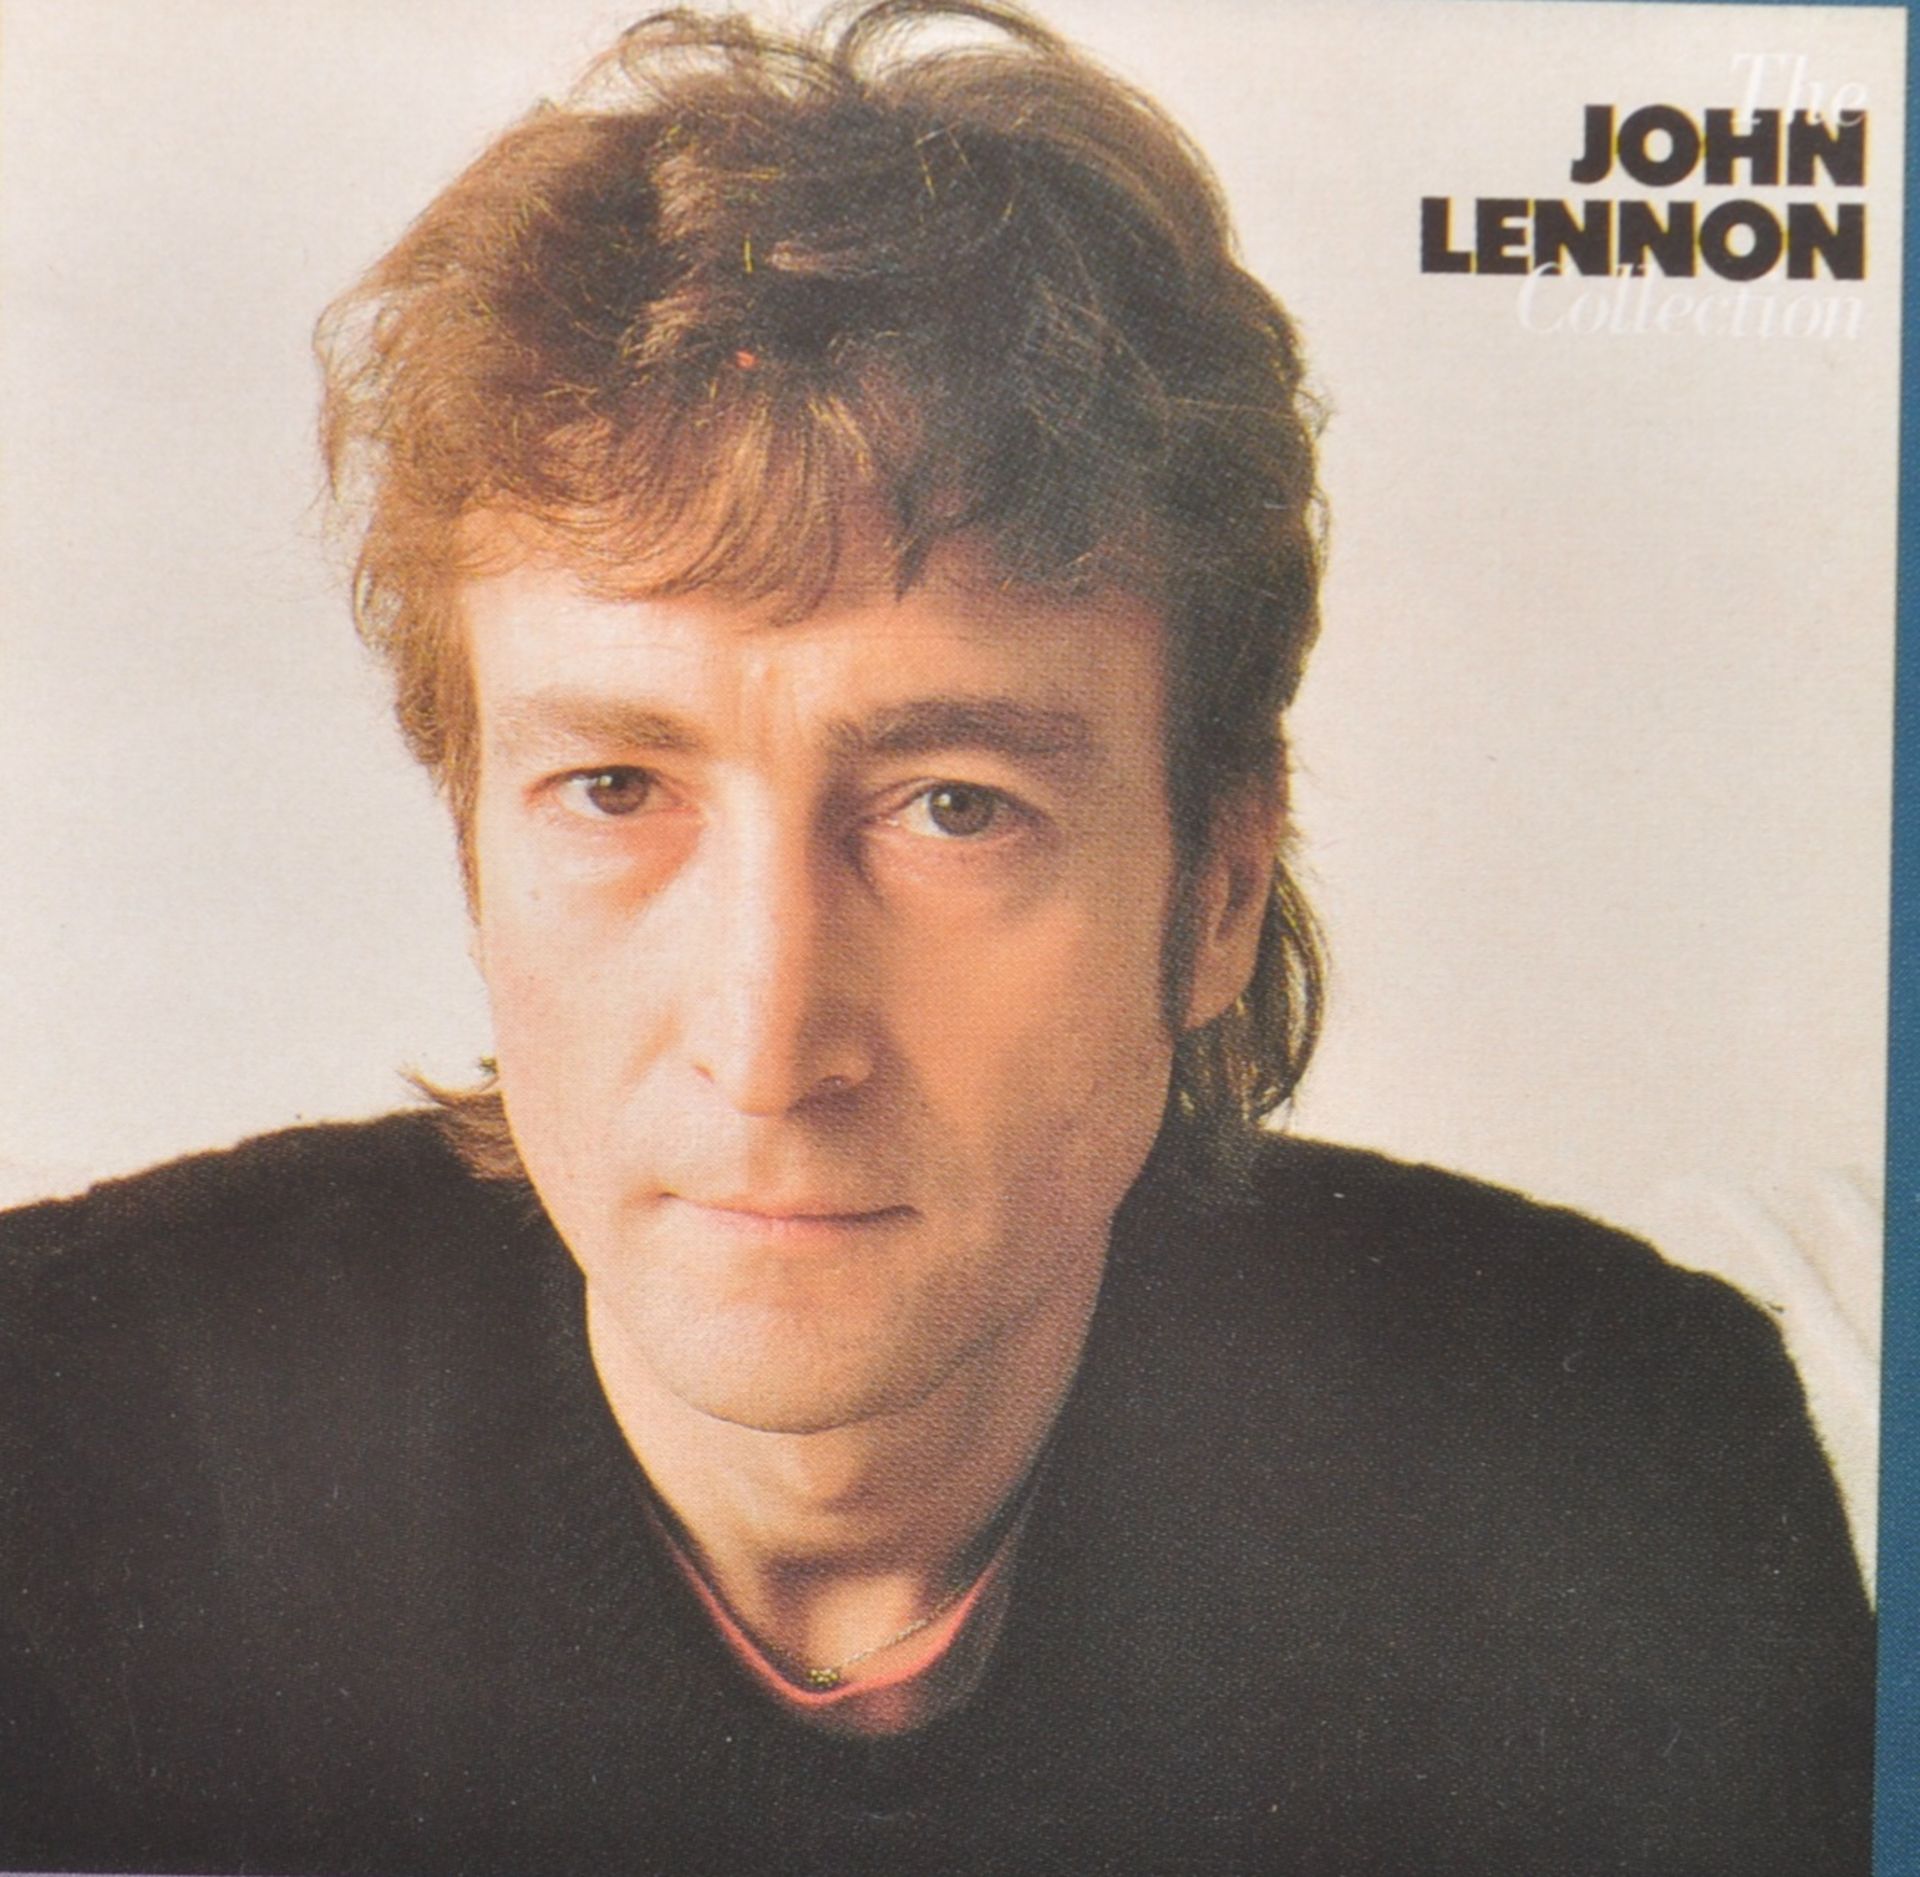 JOHN LENNON - JEALOUS GUY - VINTAGE MUSIC / MOVIE POSTER - Image 5 of 6